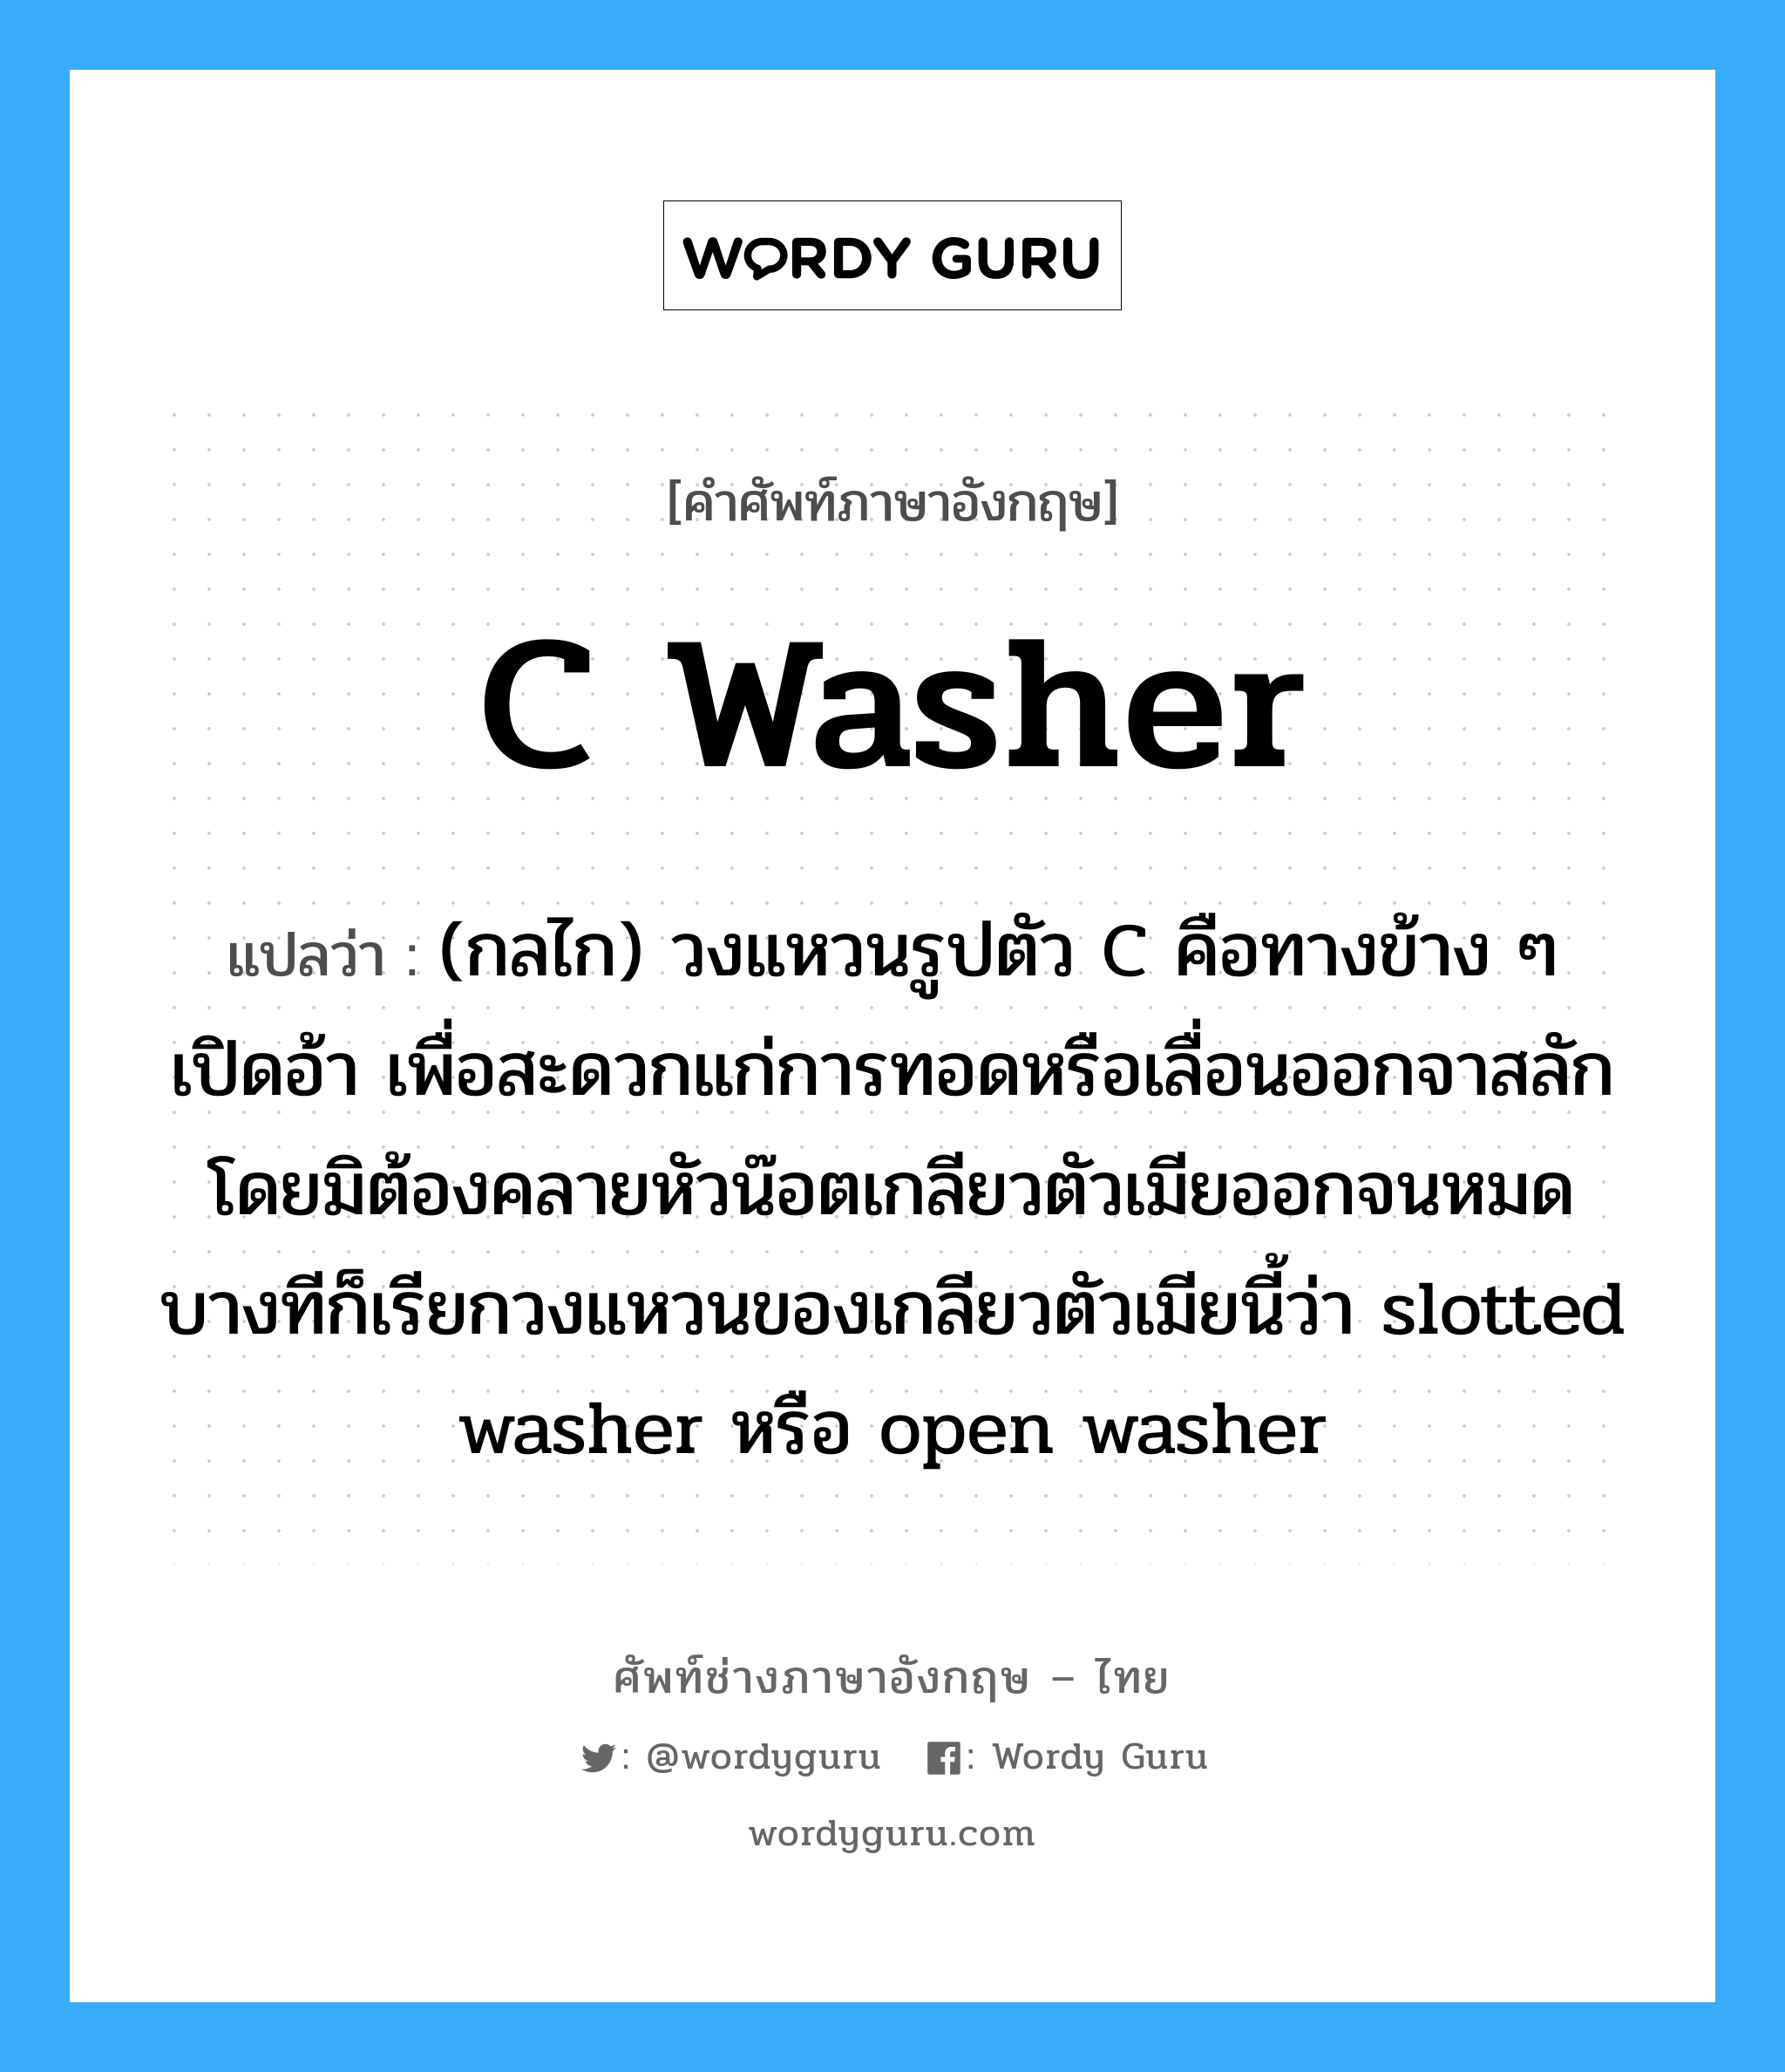 C washer แปลว่า?, คำศัพท์ช่างภาษาอังกฤษ - ไทย C washer คำศัพท์ภาษาอังกฤษ C washer แปลว่า (กลไก) วงแหวนรูปตัว C คือทางข้าง ๆ เปิดอ้า เพื่อสะดวกแก่การทอดหรือเลื่อนออกจาสลักโดยมิต้องคลายหัวน๊อตเกลียวตัวเมียออกจนหมด บางทีก็เรียกวงแหวนของเกลียวตัวเมียนี้ว่า slotted washer หรือ open washer